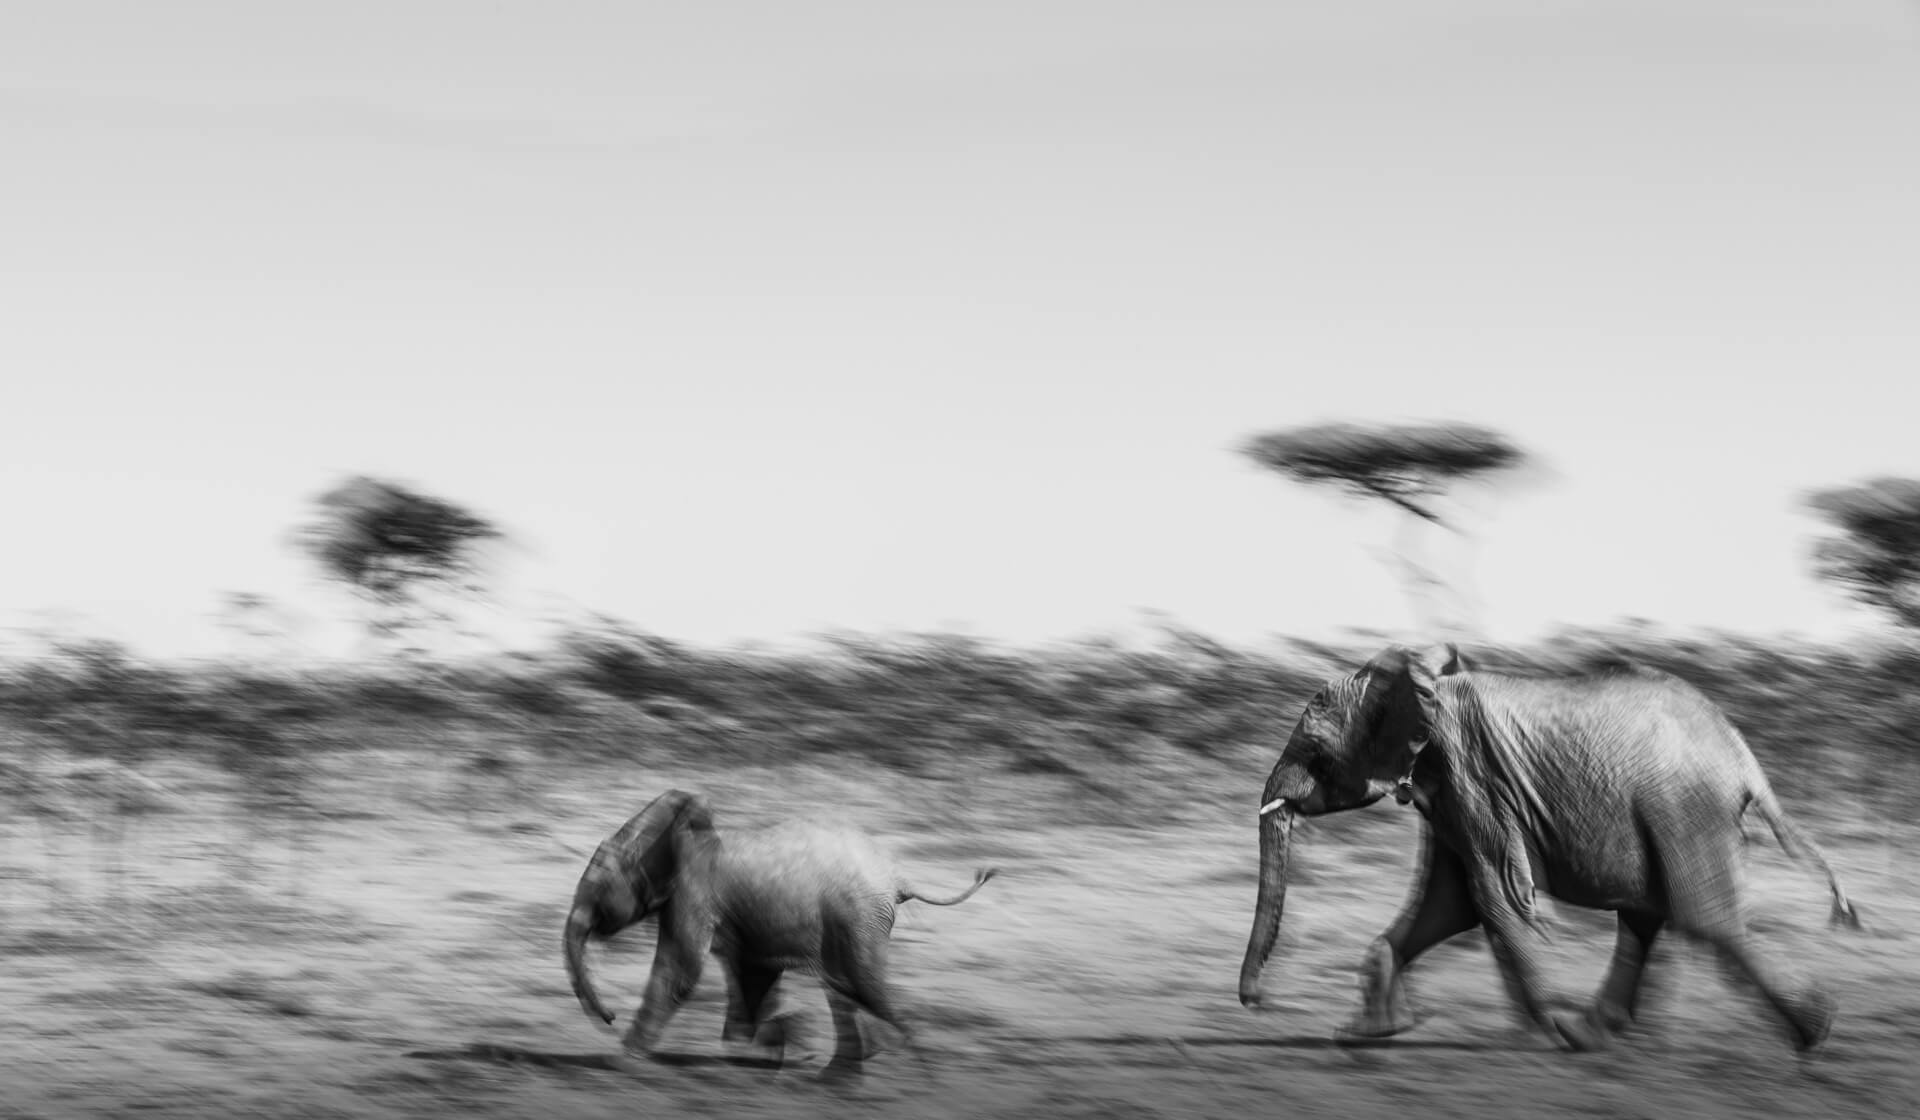 Elephant Escape, Kenia, 2018